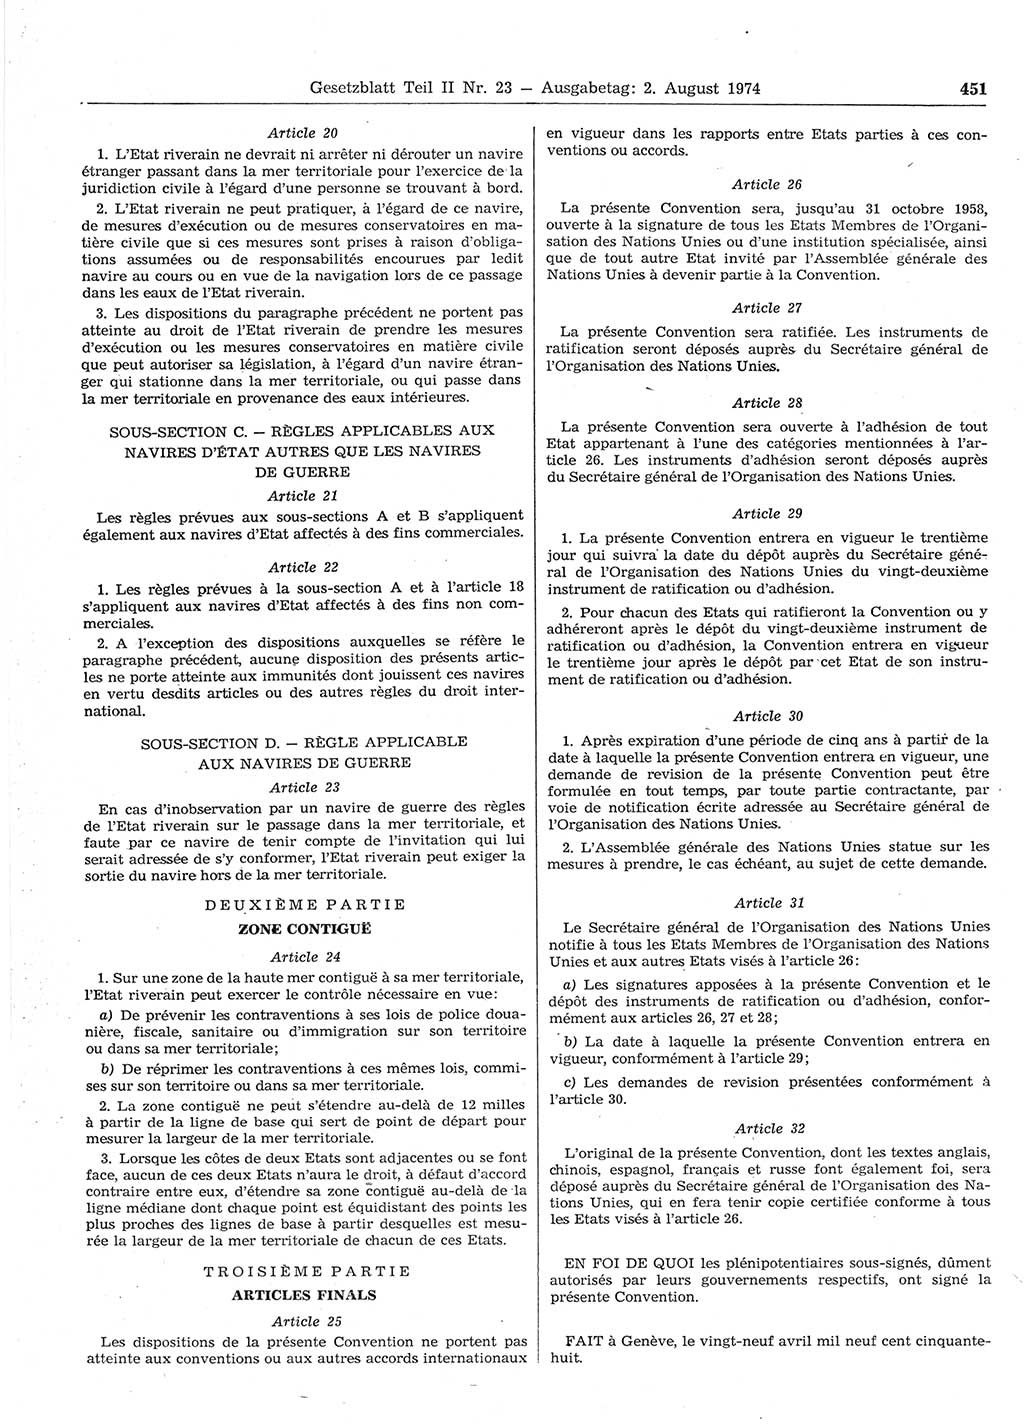 Gesetzblatt (GBl.) der Deutschen Demokratischen Republik (DDR) Teil ⅠⅠ 1974, Seite 451 (GBl. DDR ⅠⅠ 1974, S. 451)